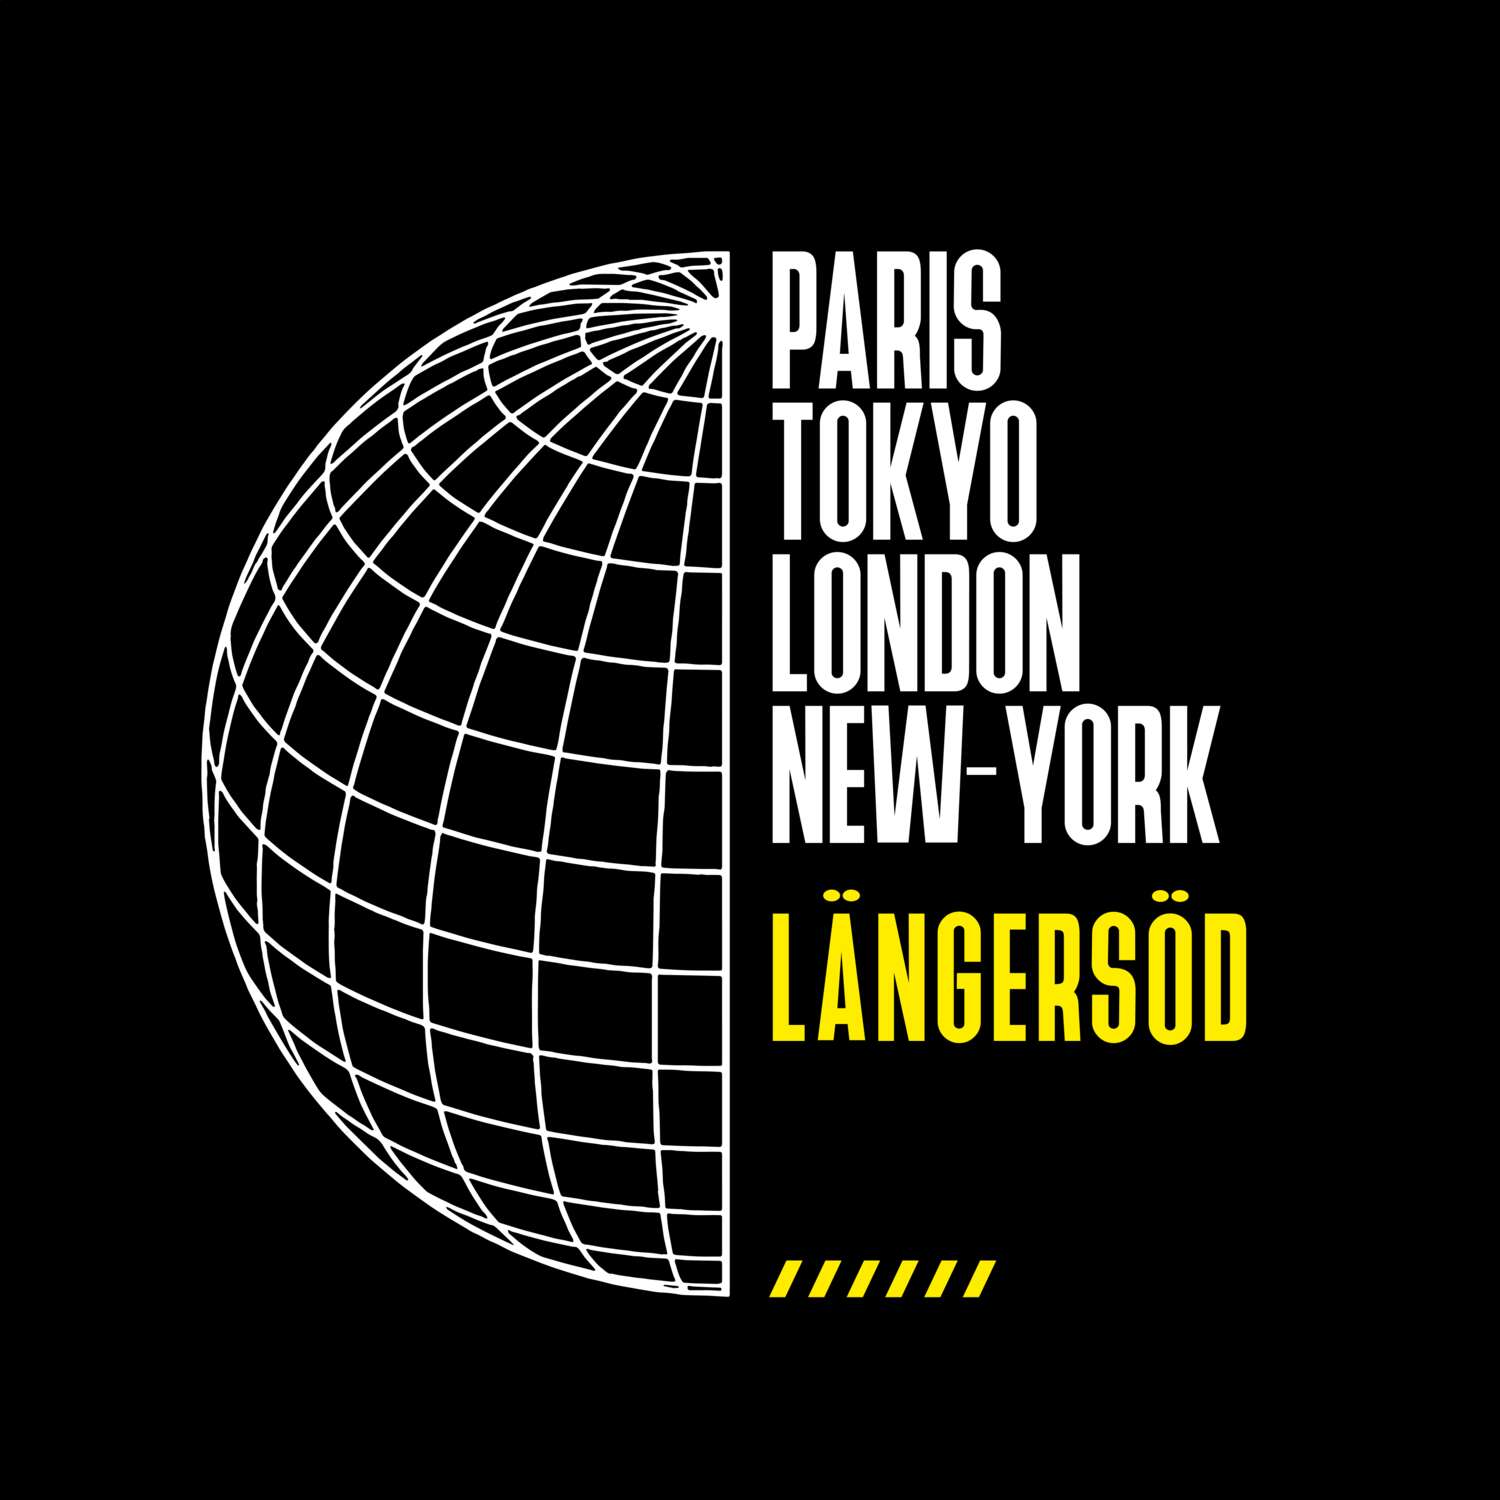 Längersöd T-Shirt »Paris Tokyo London«